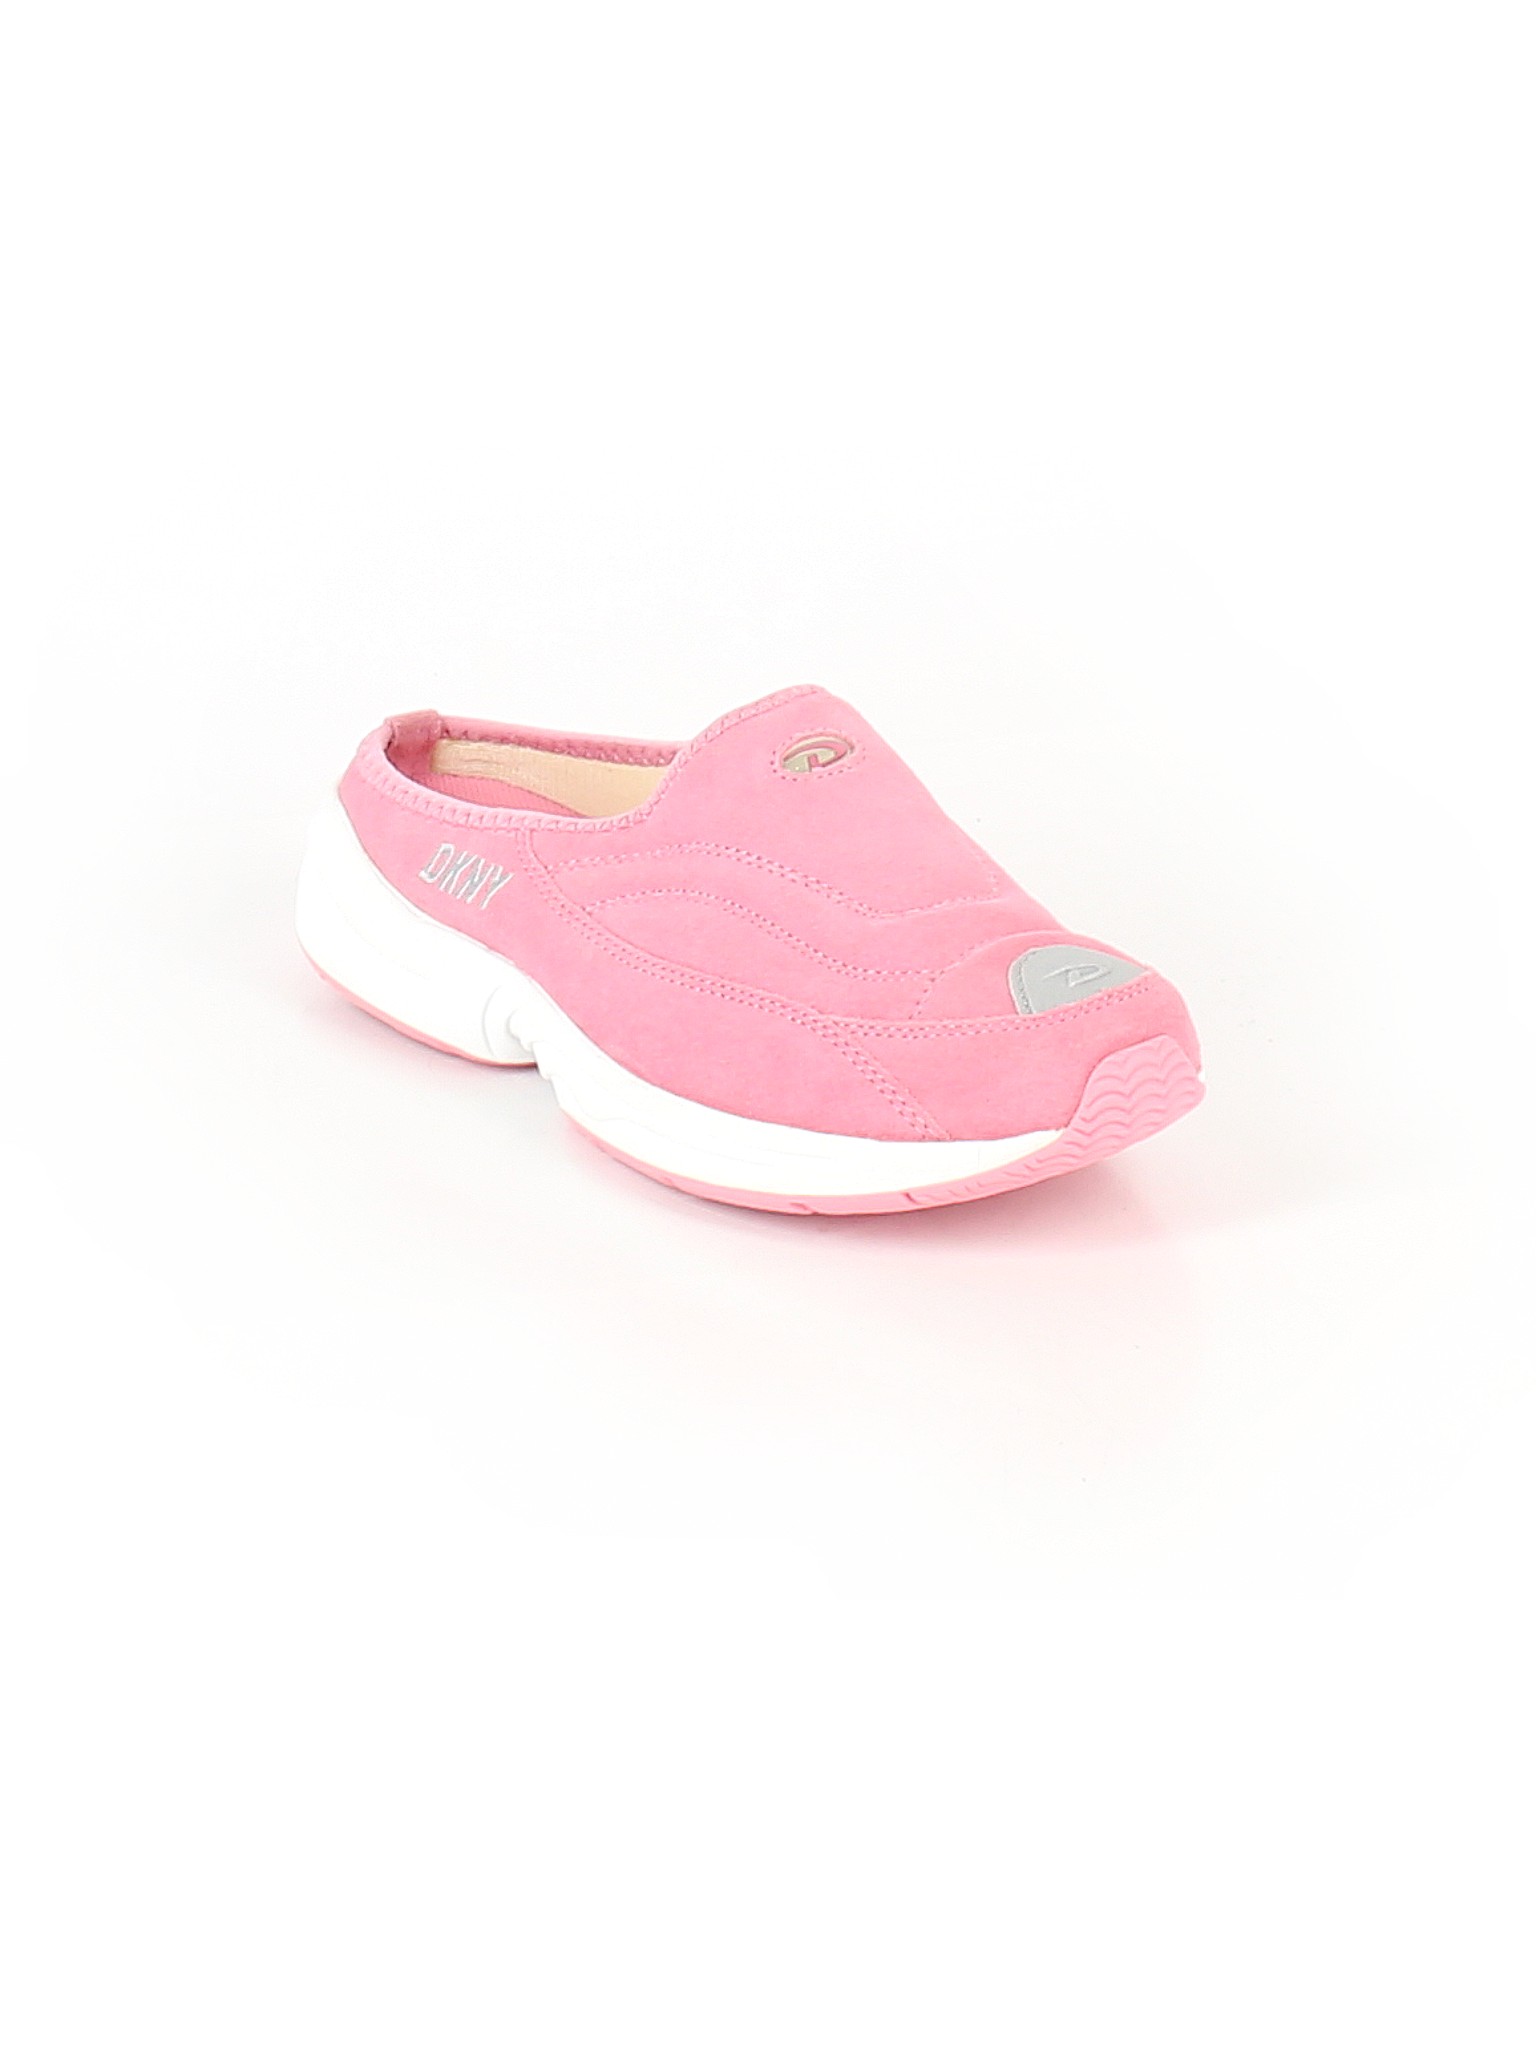 dkny pink sneakers